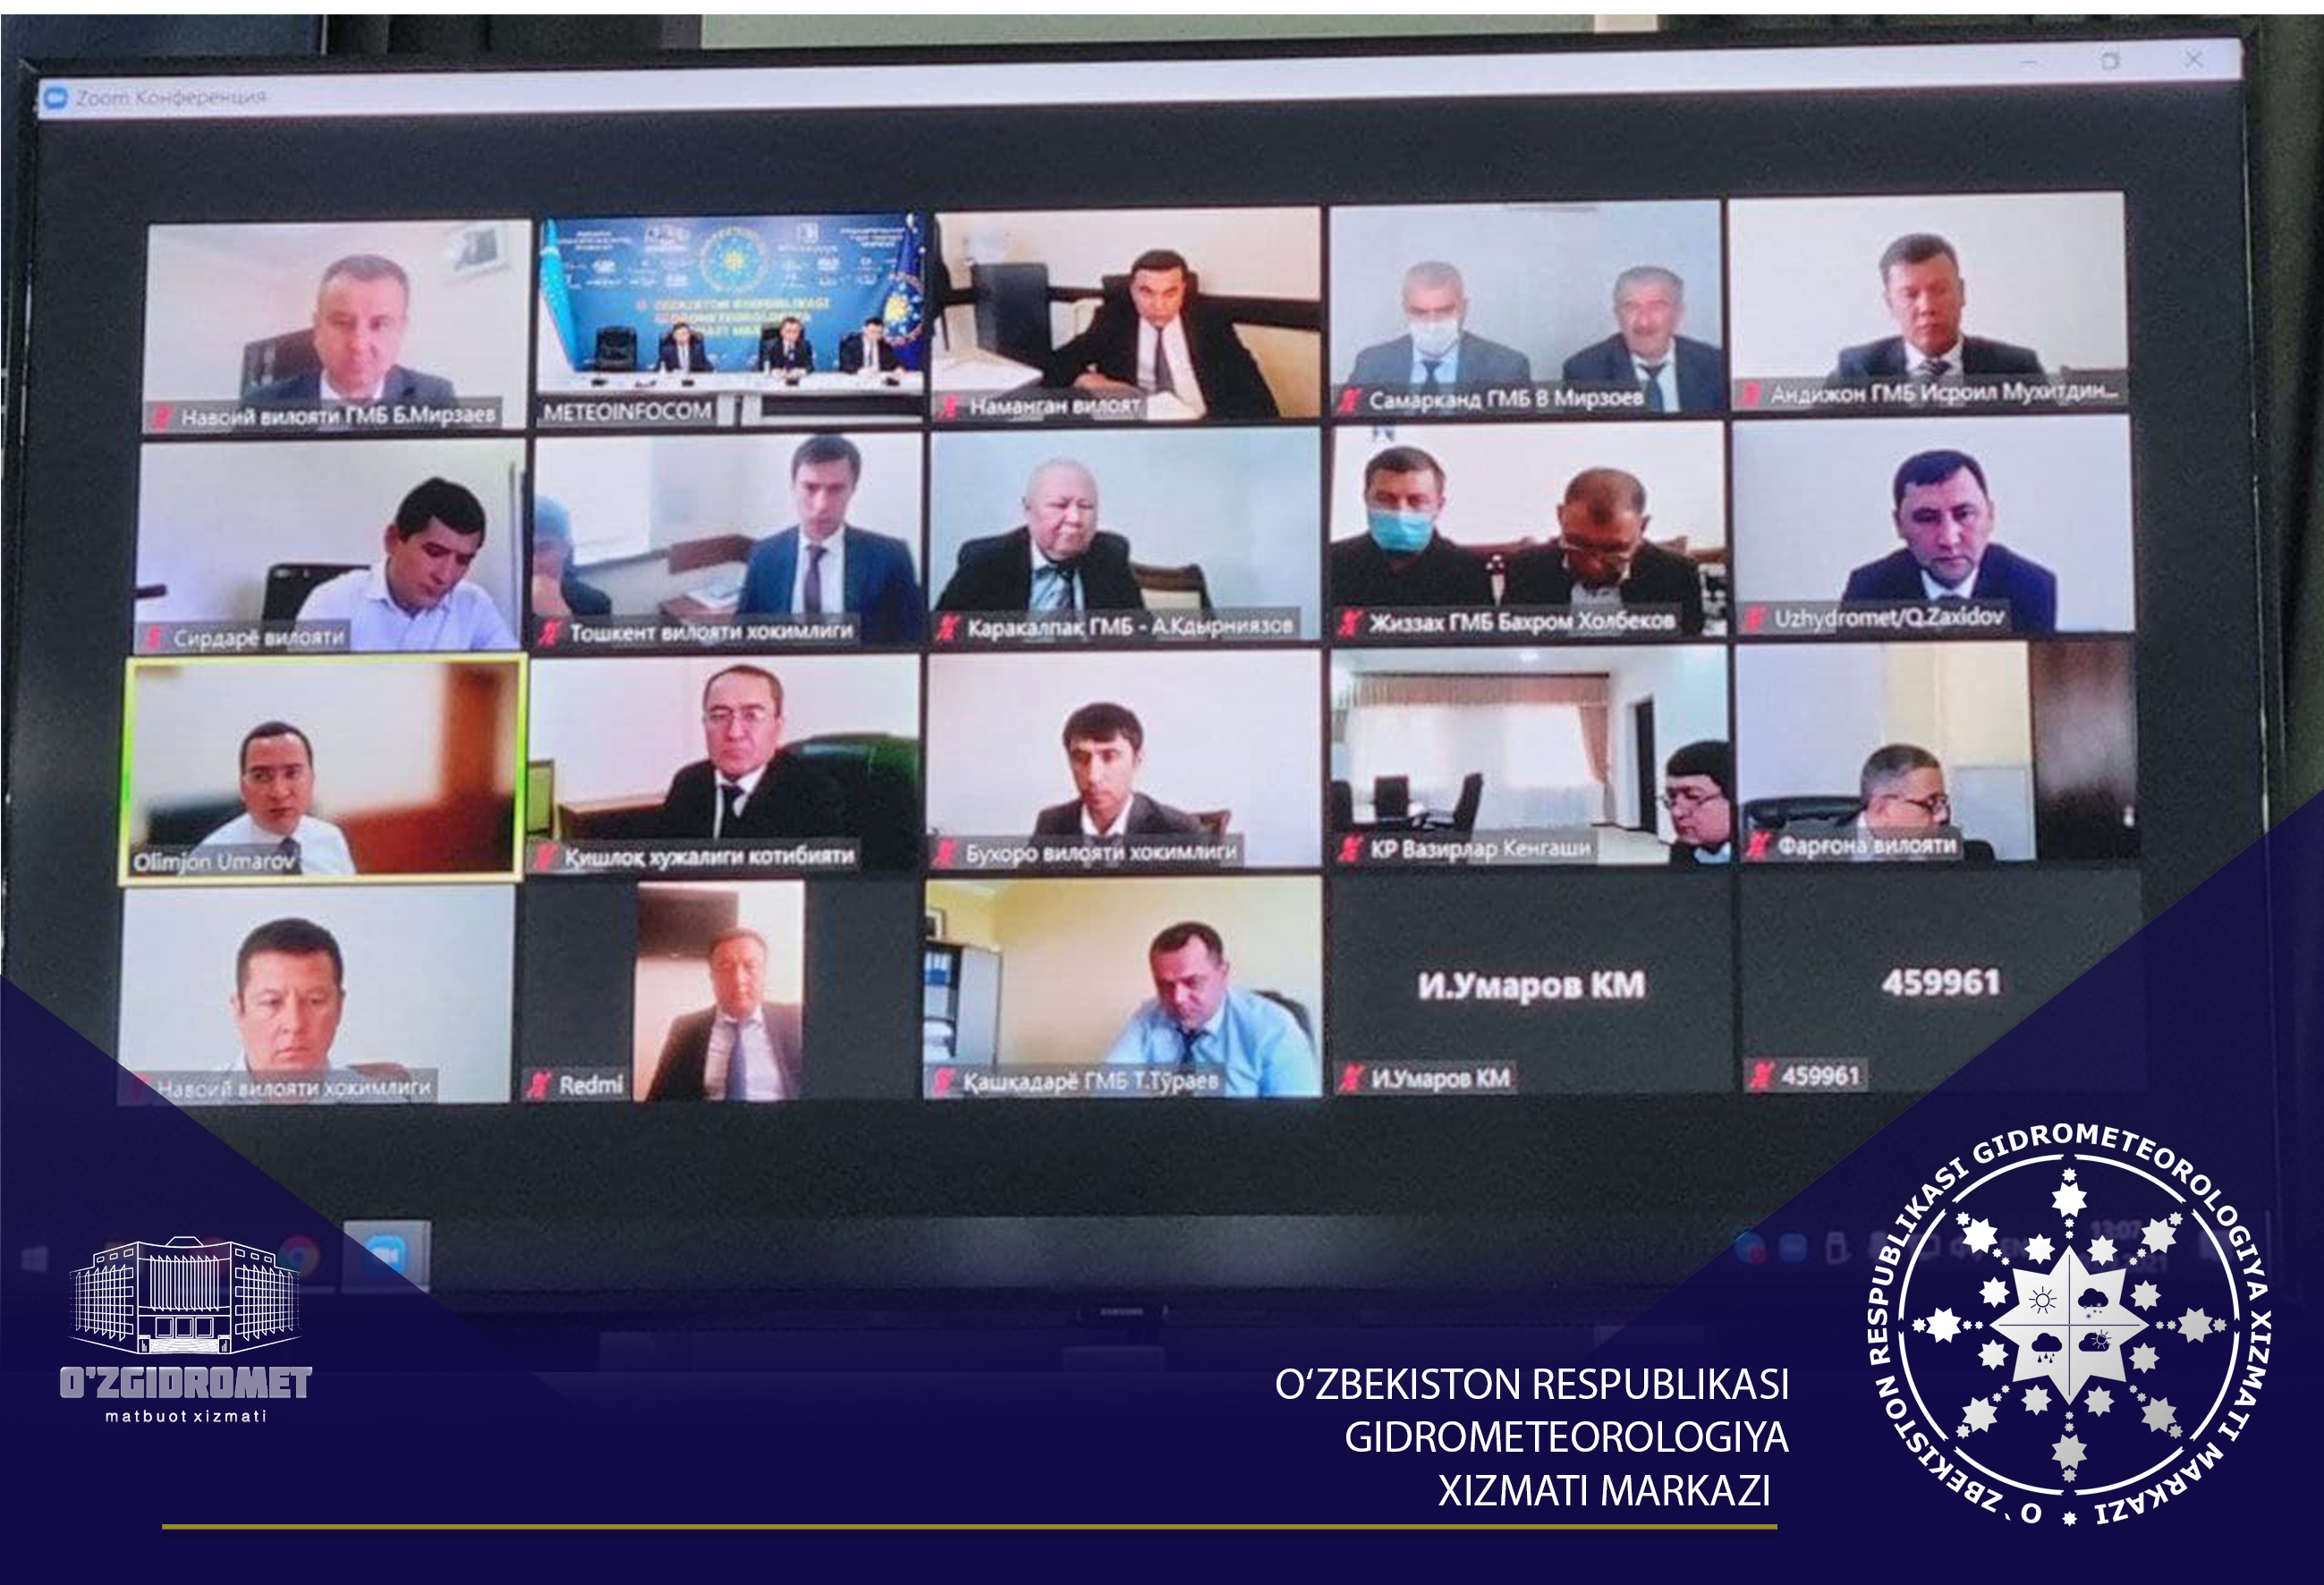 29 сентября в зале заседаний Узгидромета состоялось совещание в формате видеоконференции по реализации задач, поставленных постановлением ПП-4896 от 17 ноября 2020 года